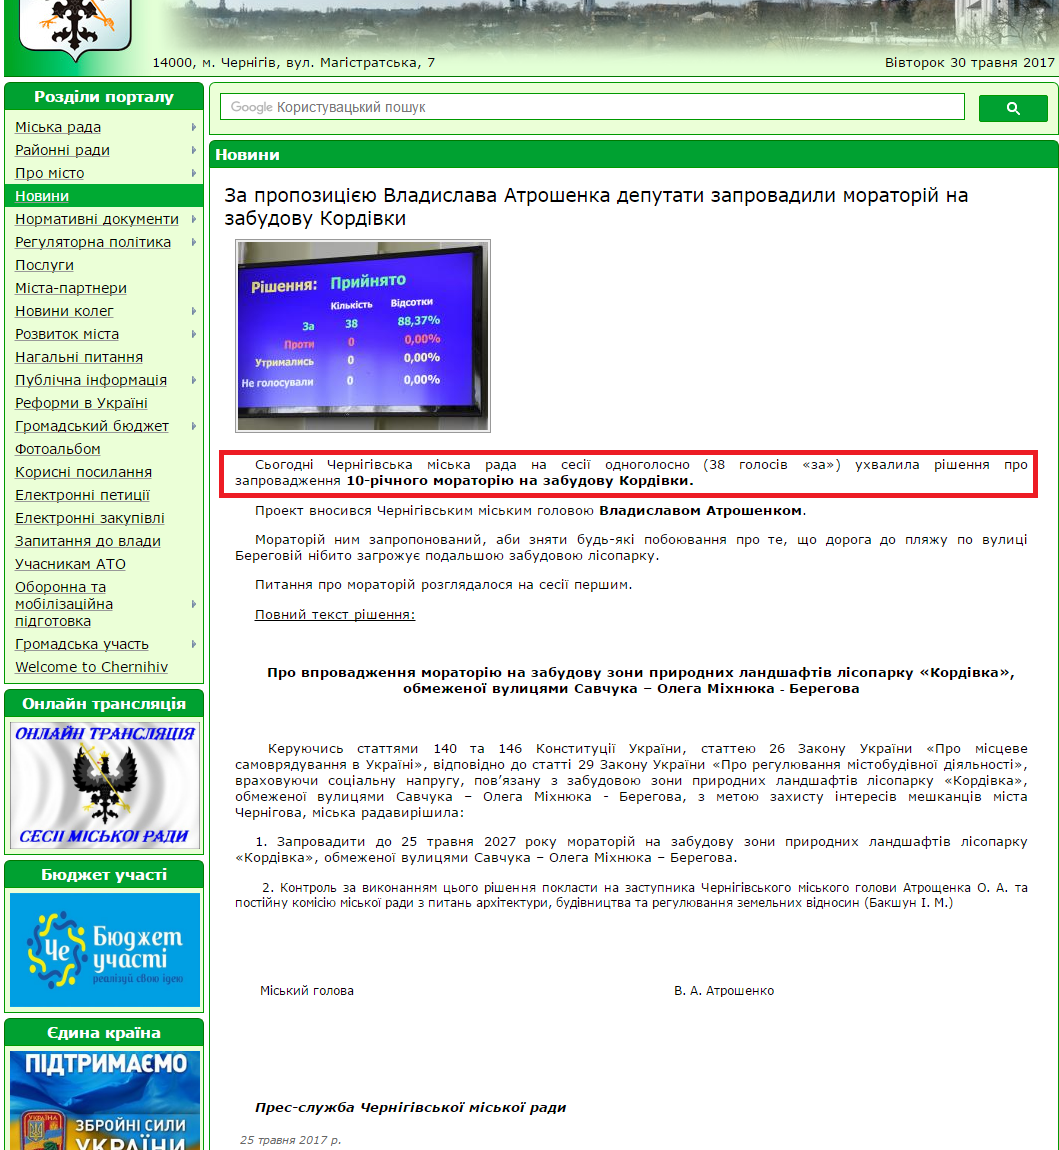 http://chernigiv-rada.gov.ua/news/view/9593